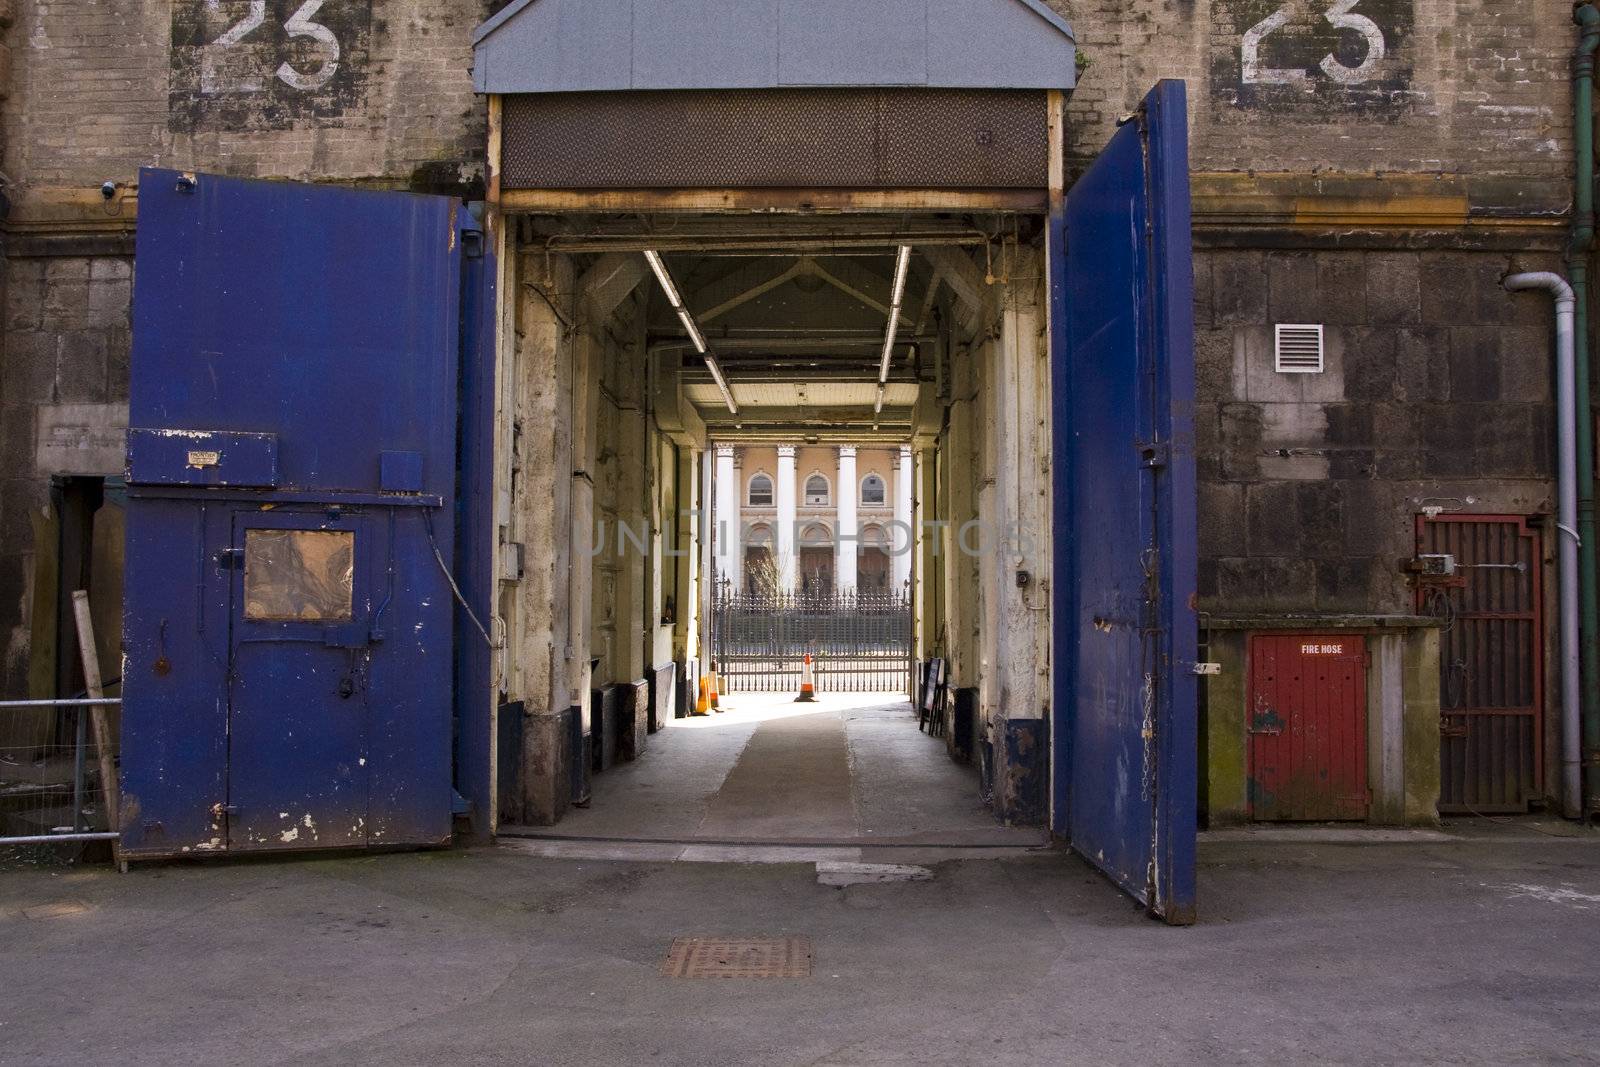 Inner prison doors by trevorb